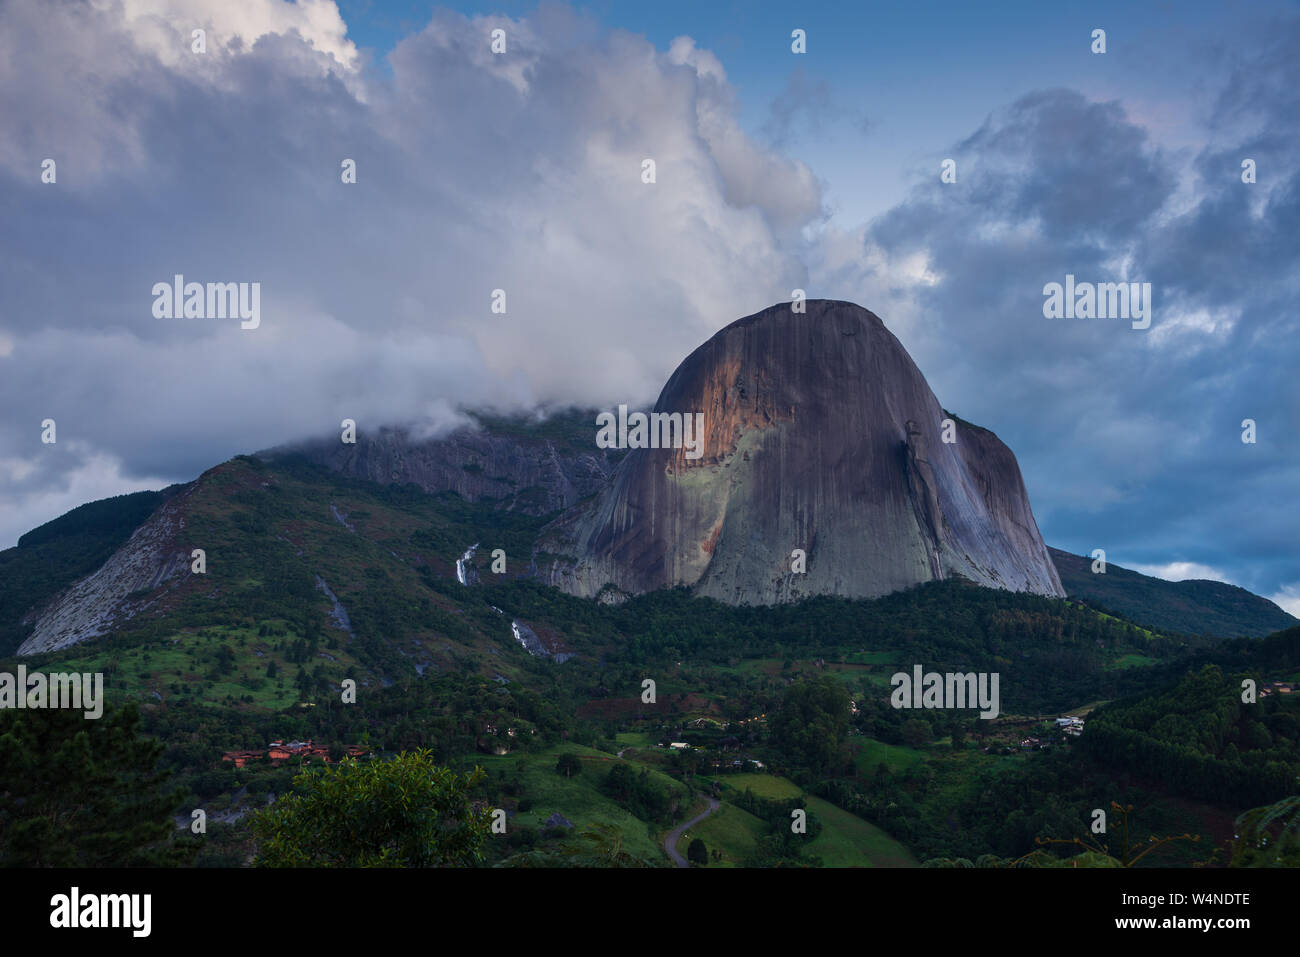 Rainy afternoon in Pedra Azul (Blue Stone mountain), Espirito Santo State, Brazil. Stock Photo